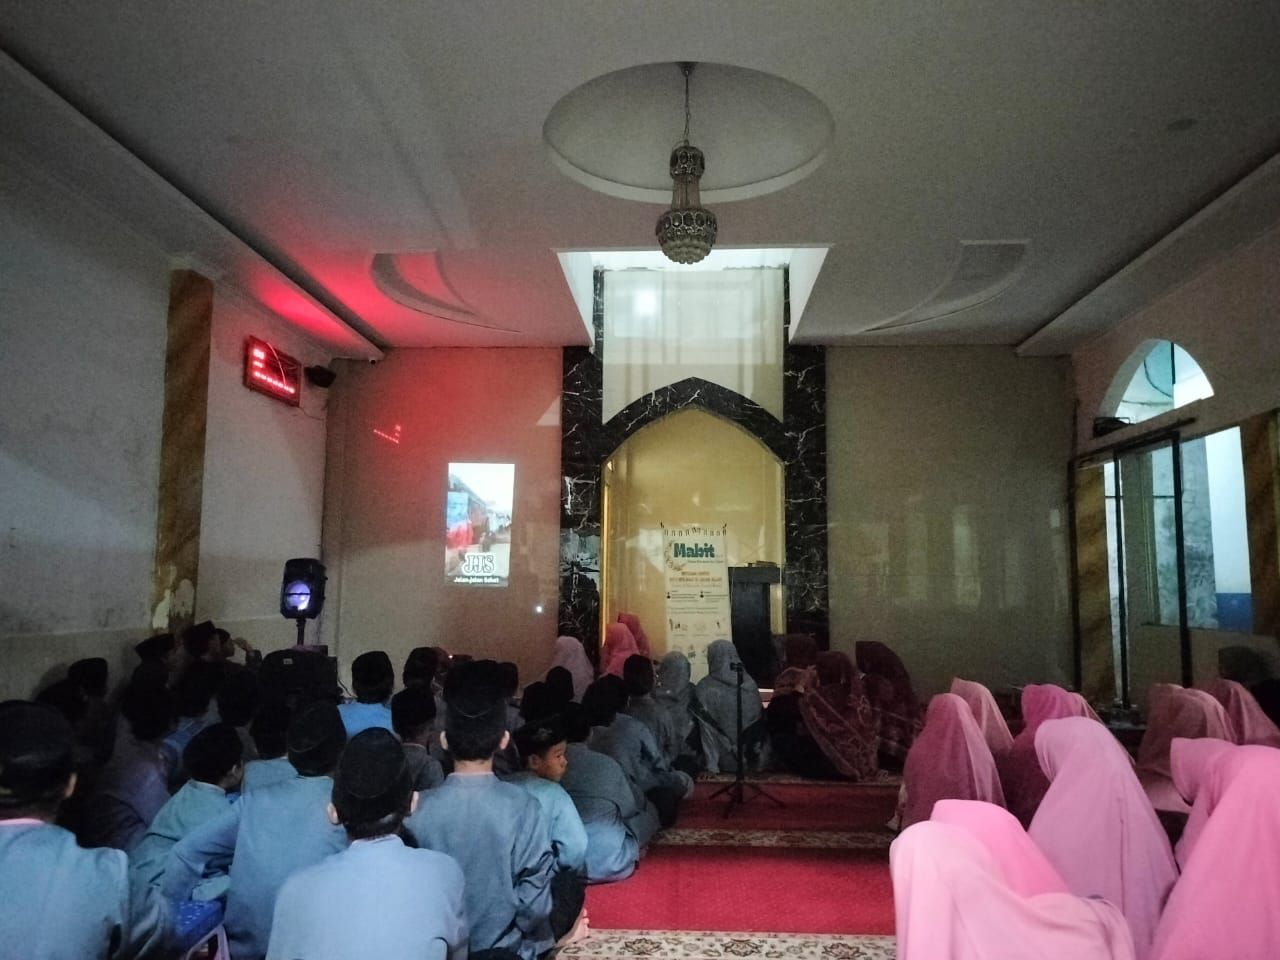 Nonton Bersama cuplikan kegiatan MABIT ke-4 Al-Mubarok Daimul Husna 